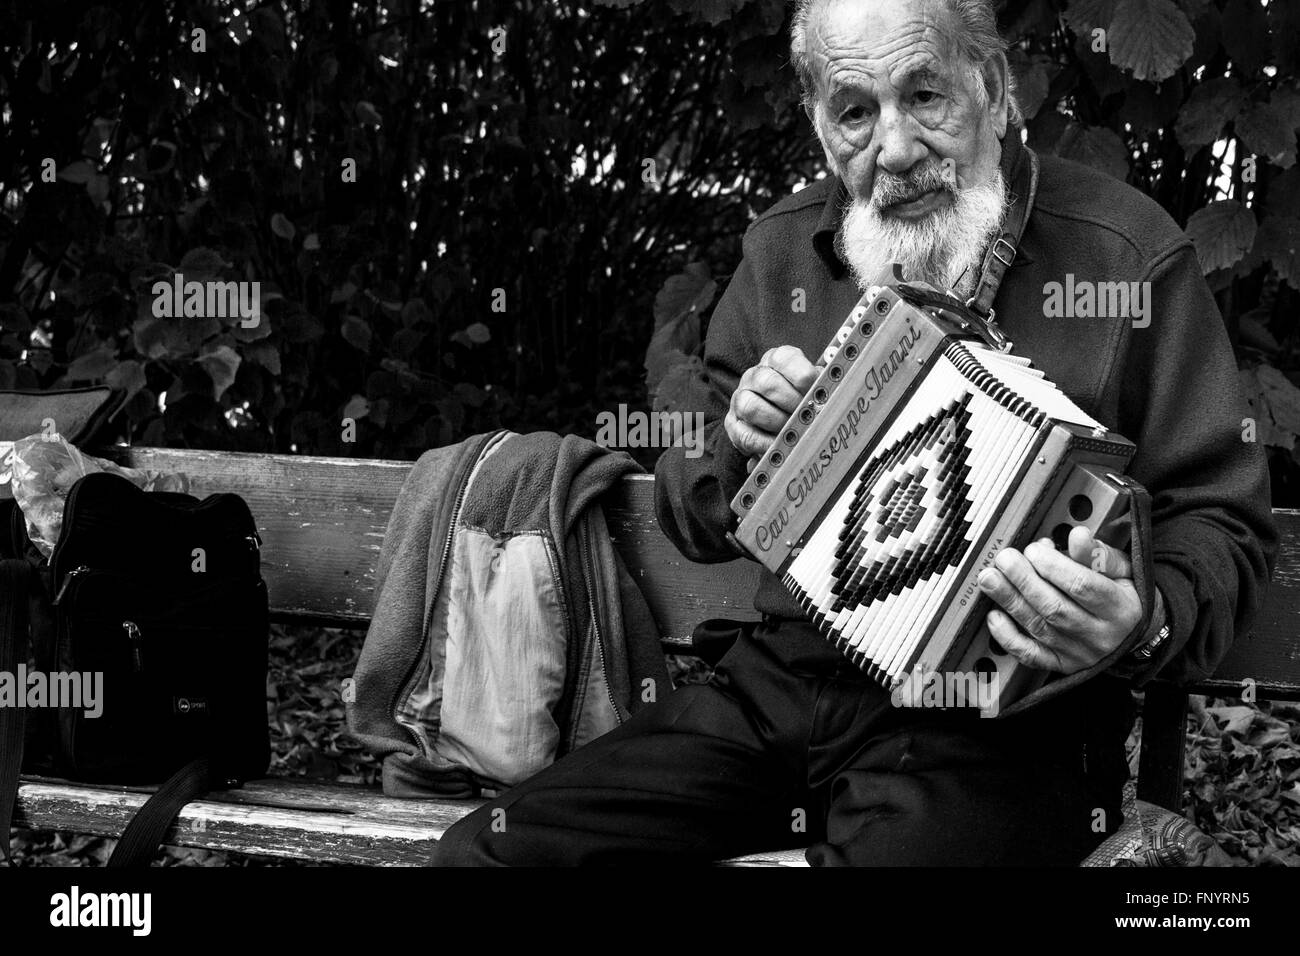 Il vecchio uomo di riproduzione di musica con i suoi strumenti sulla strada. Torino, Italia, 2015. Foto Stock